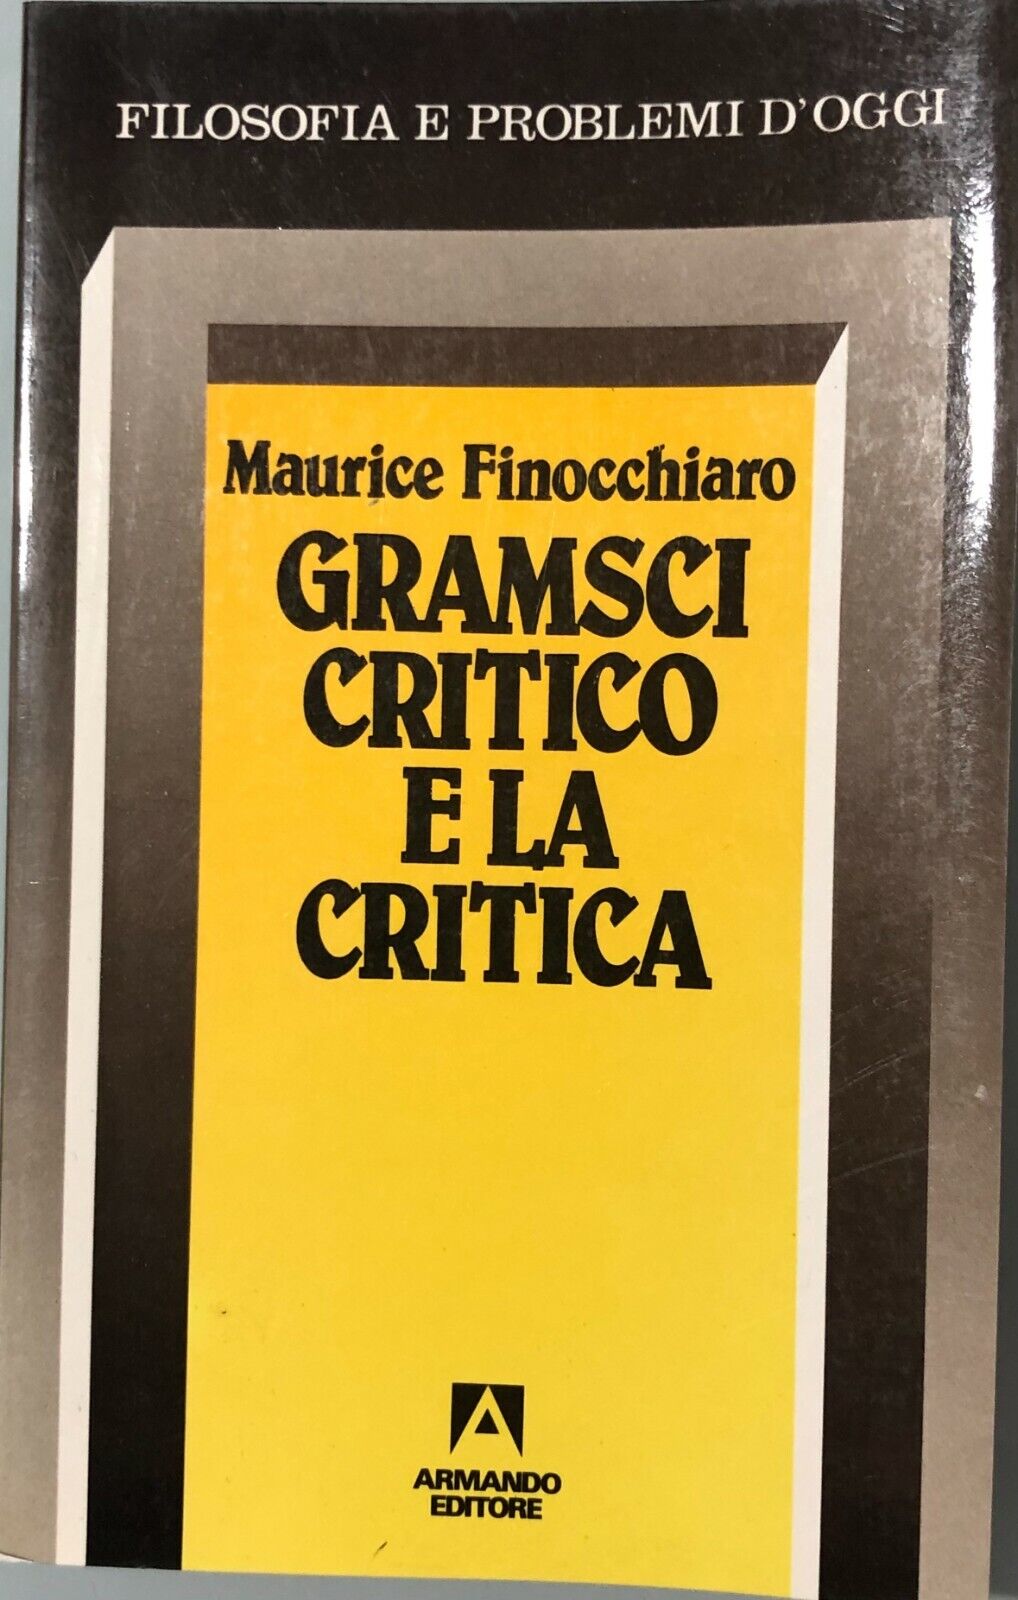 Gramsci critico e la critica di Maurice Finocchiaro, 1998, Armando Editore